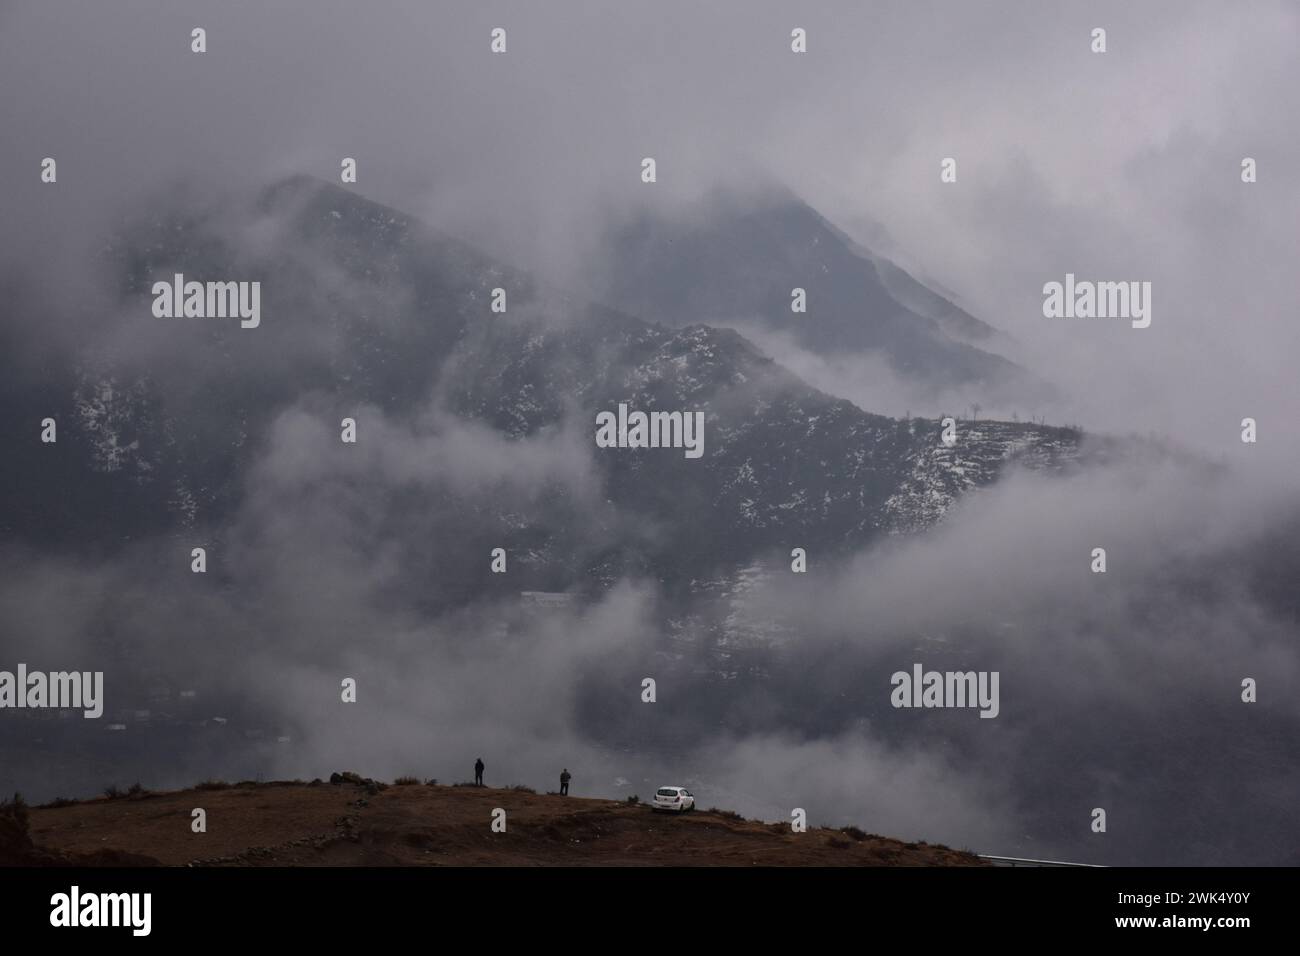 Les résidents marchent le long de la colline pendant la pluie à la périphérie de Srinagar, la capitale estivale du Jammu-et-Cachemire. Des chutes de neige fraîches ont été signalées dans les parties supérieures du Cachemire, tandis que les plaines ont connu des pluies, entraînant une baisse significative des températures. Le bureau météorologique a prévu des chutes de neige modérées à fortes ou des précipitations dans la vallée du Cachemire pour les trois prochains jours. Banque D'Images